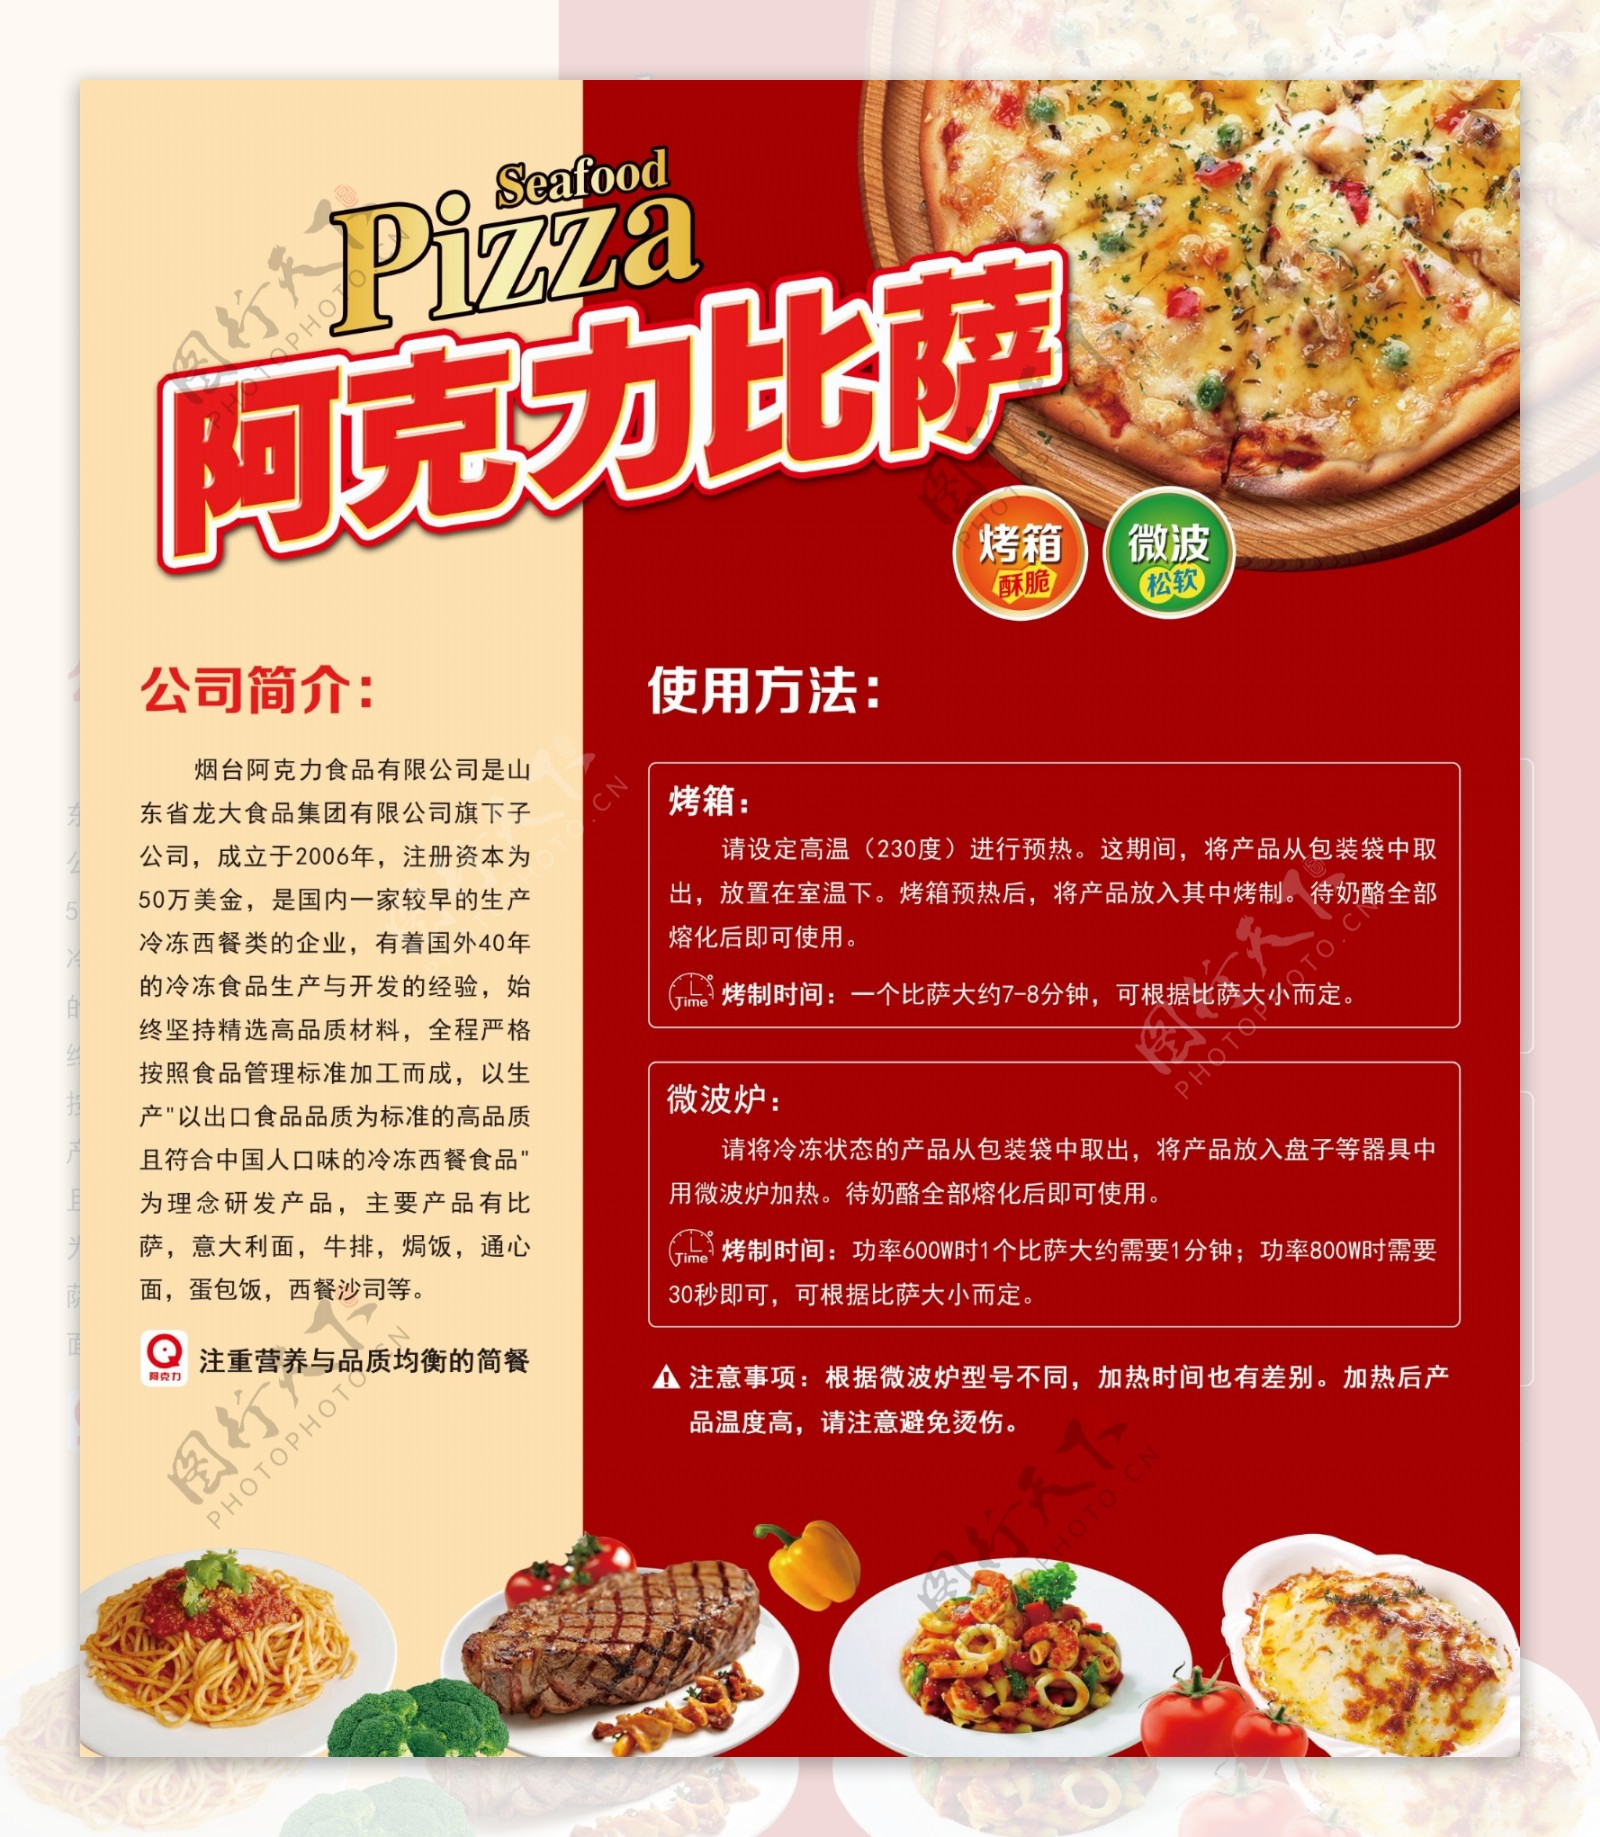 2018披萨制作介绍宣传美食展架电商海报